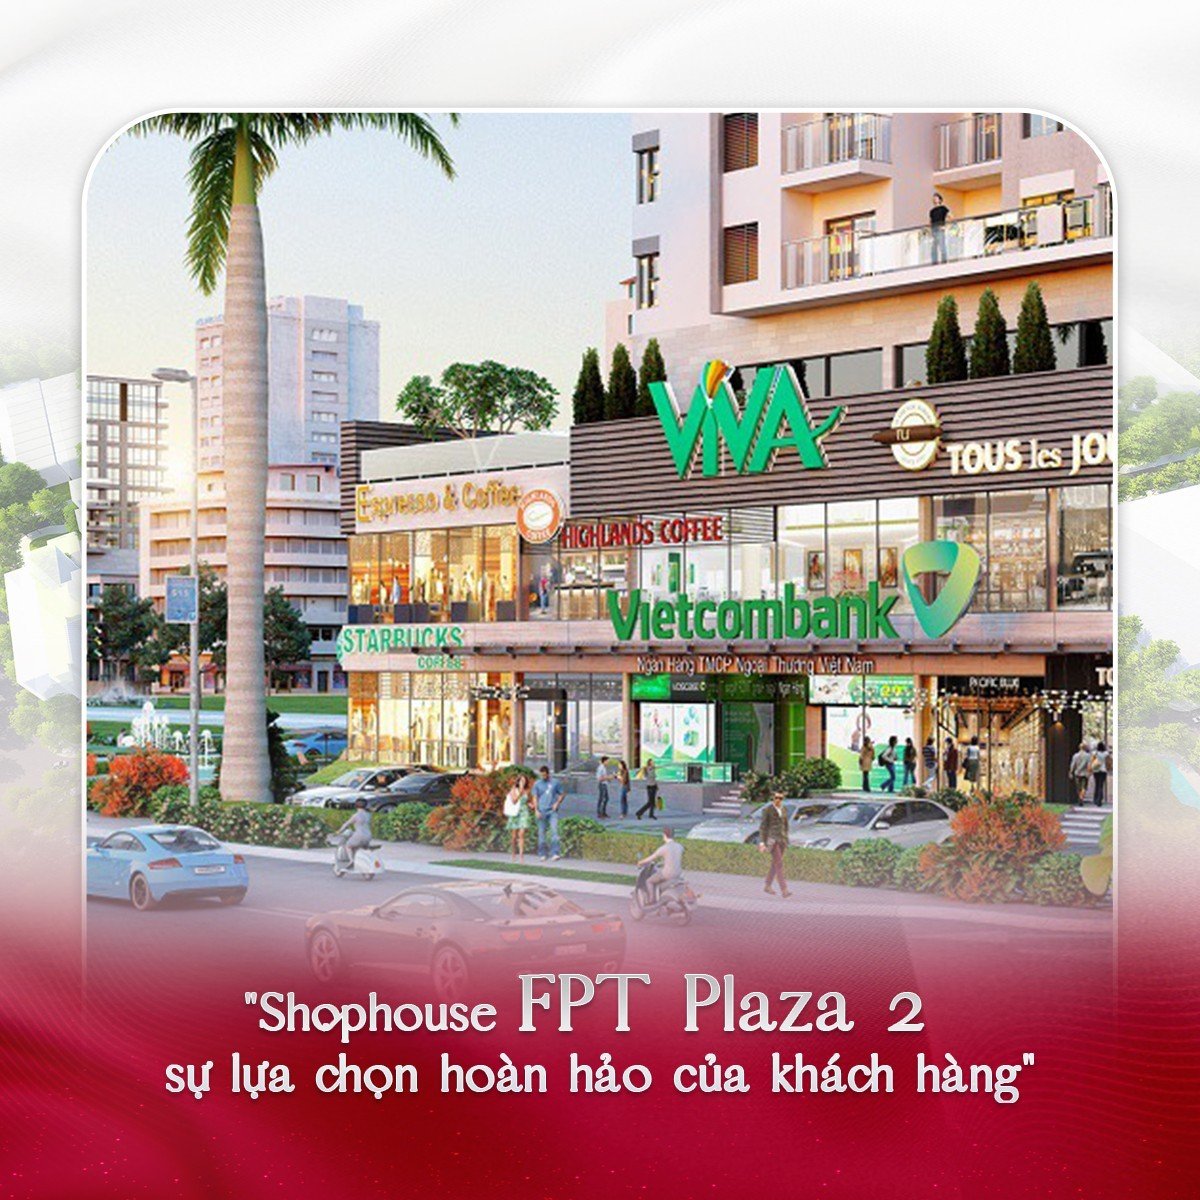 Shophouse FPT Plaza 2 sự lựa chọn hoàn hảo của khách hàng